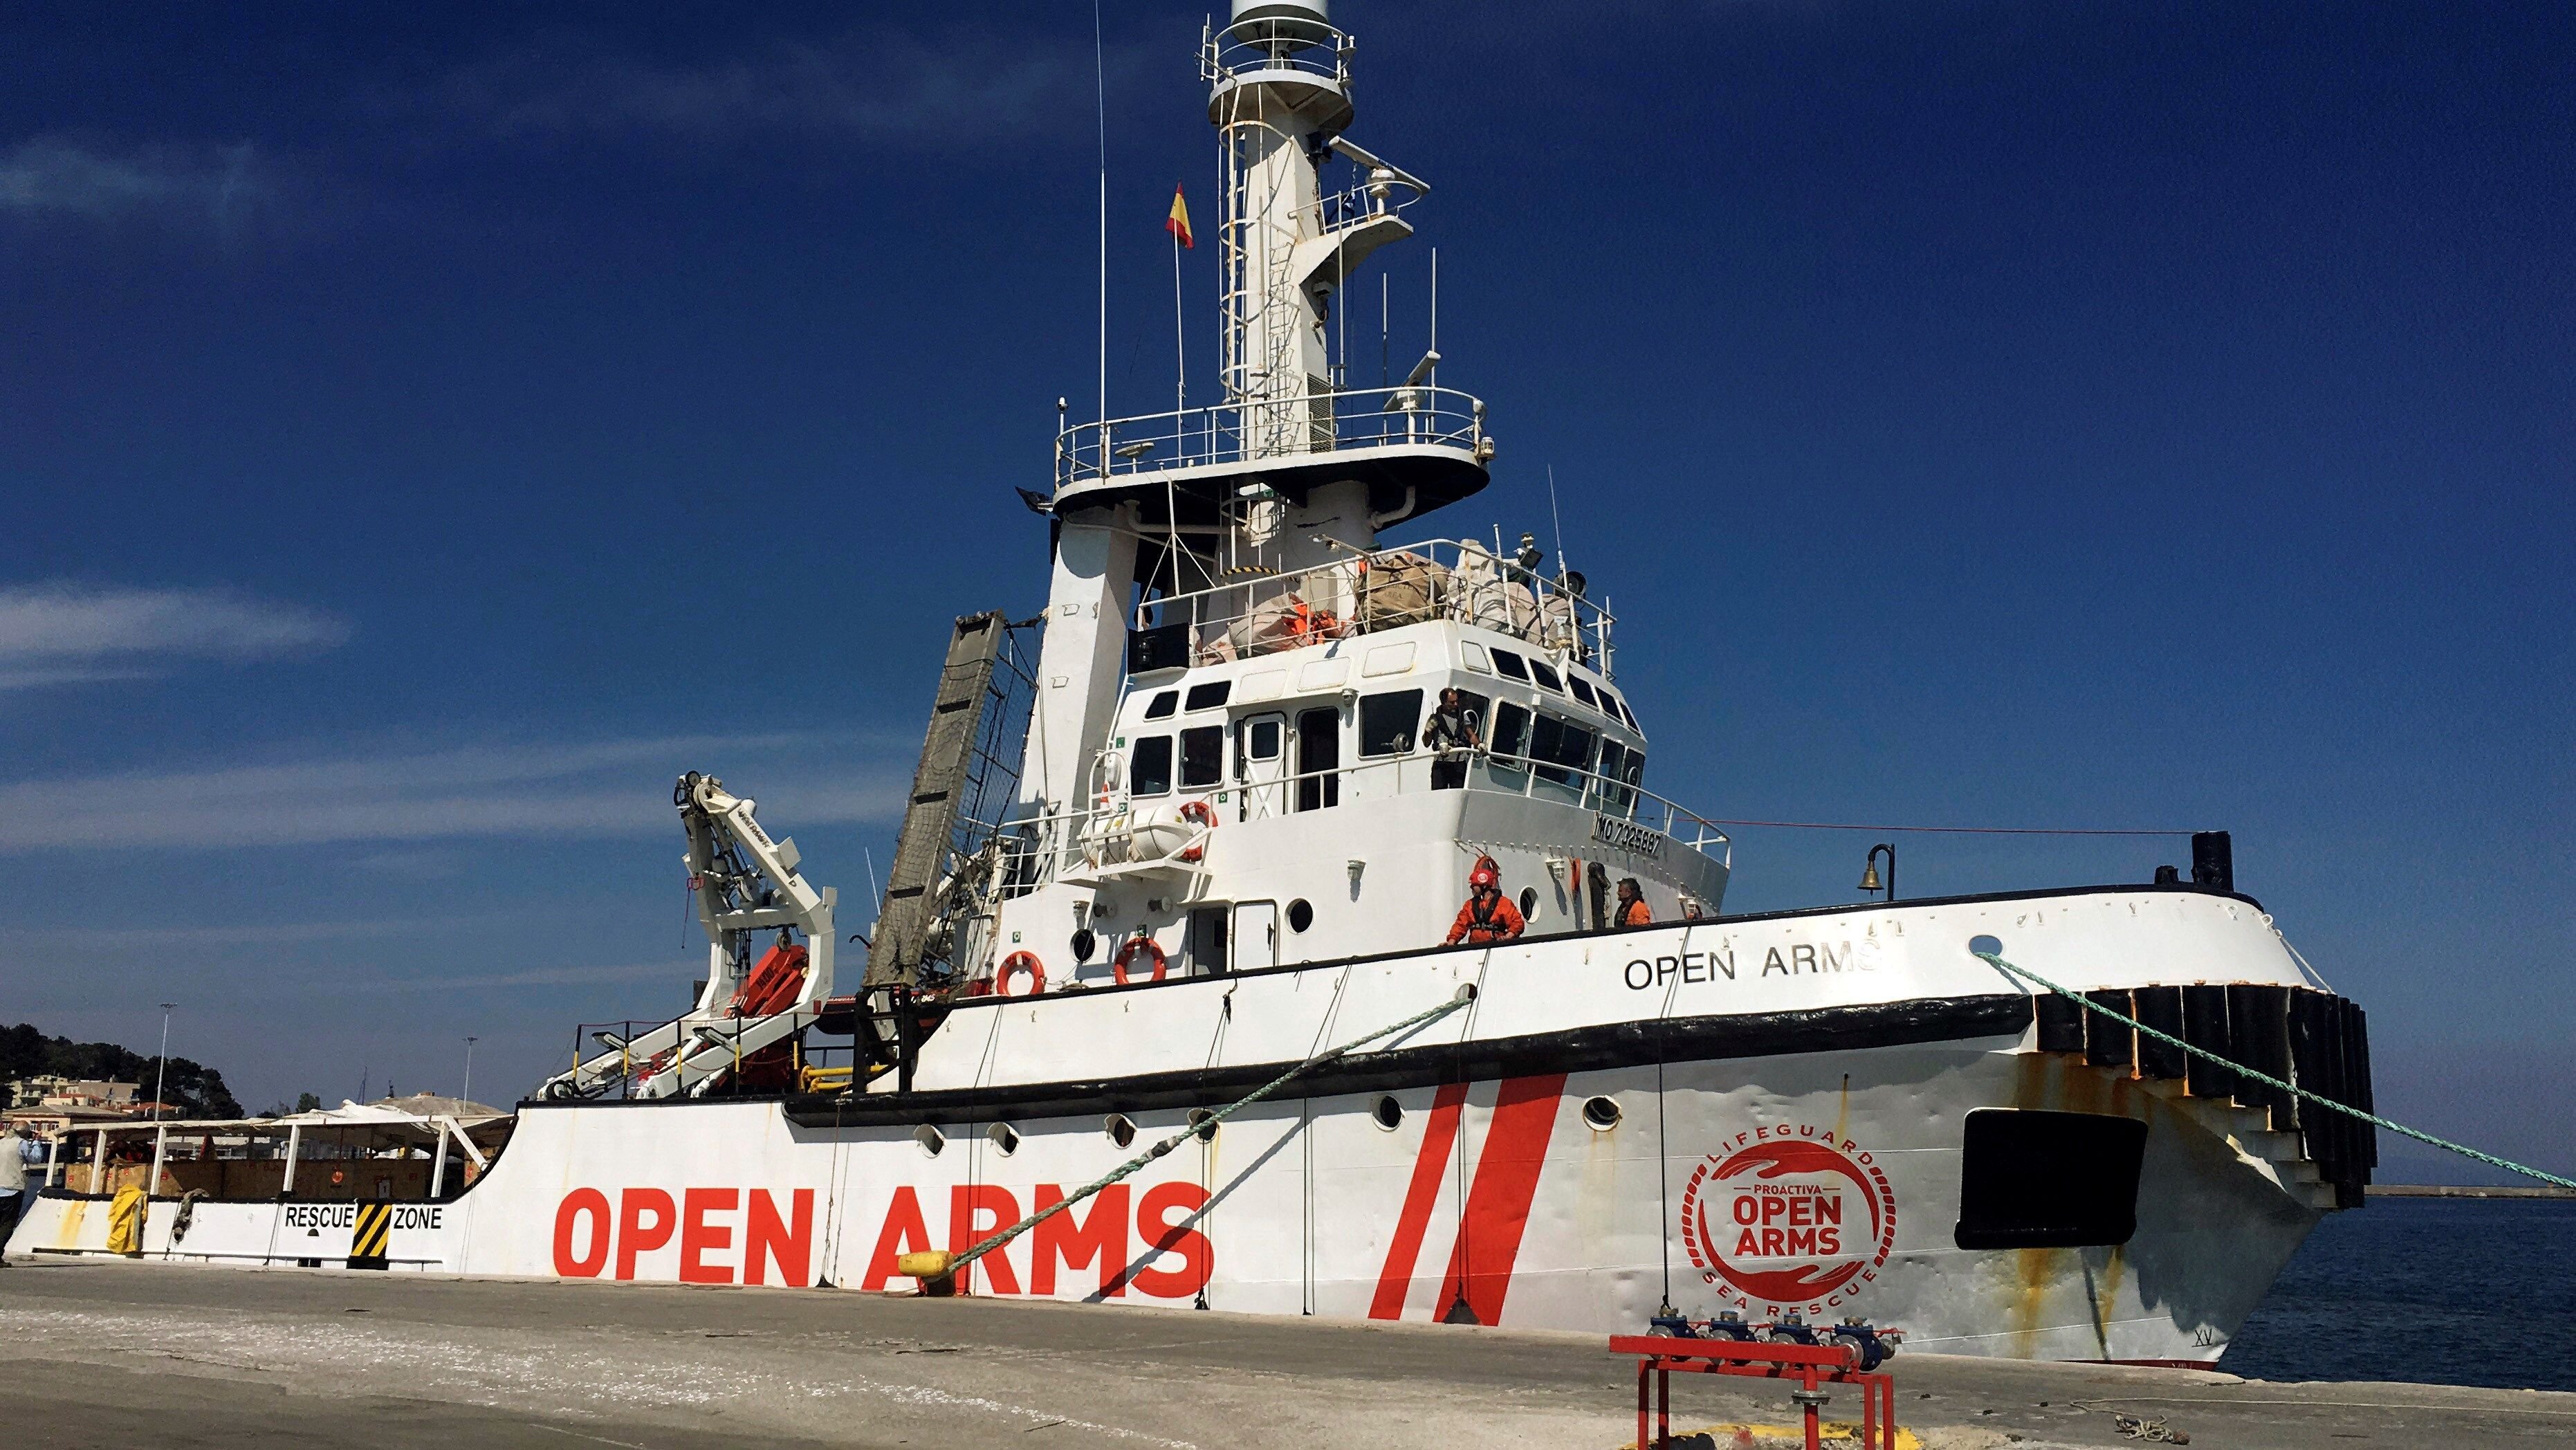 L'Open Arms atraca a Lesbos després d'esperar durant 7 dies el permís